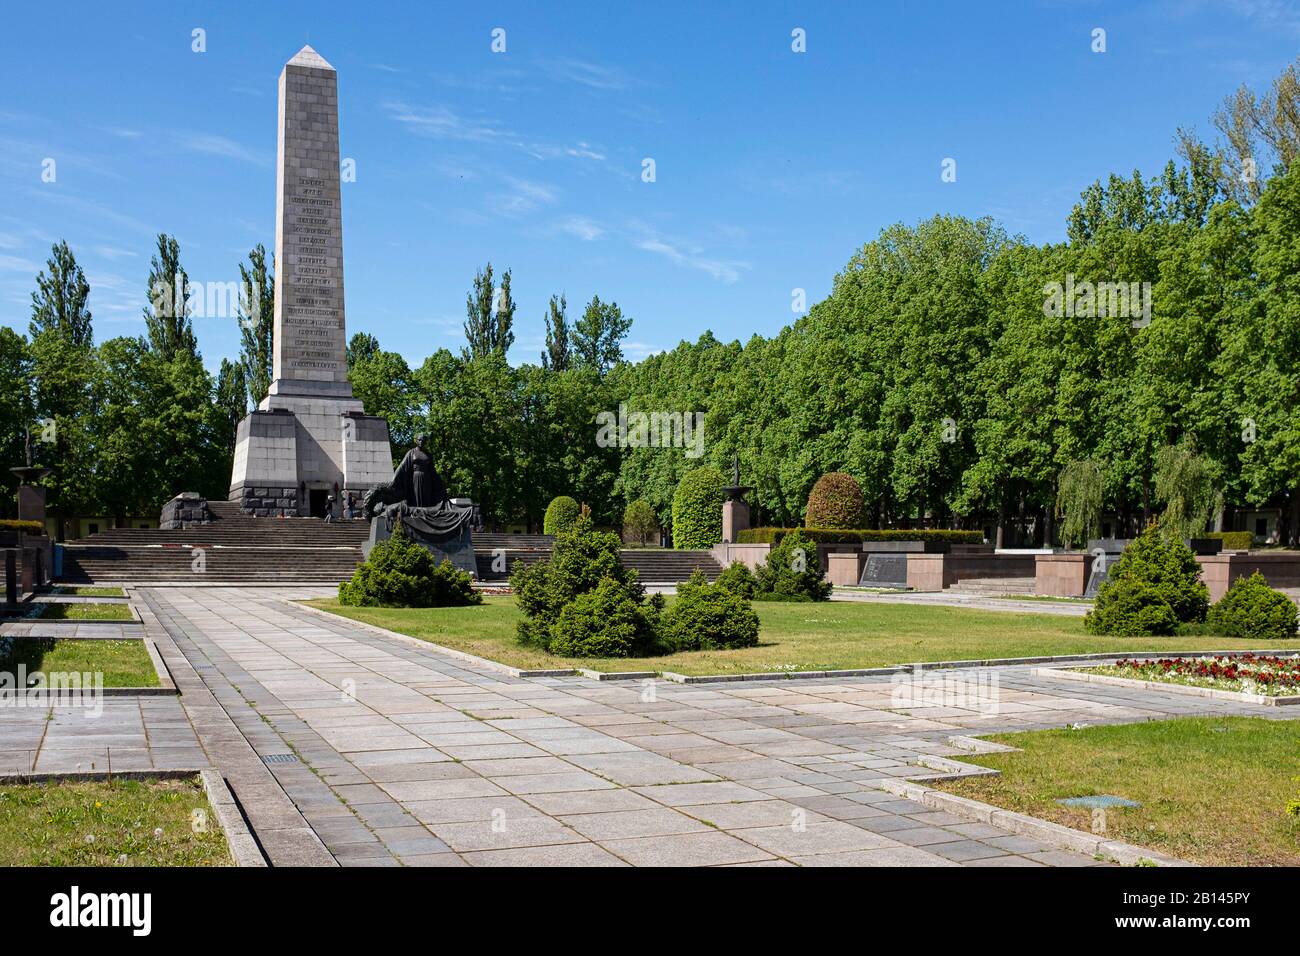 Soviet memorial, Schönholzer Heide, Pankow, Berlin Stock Photo